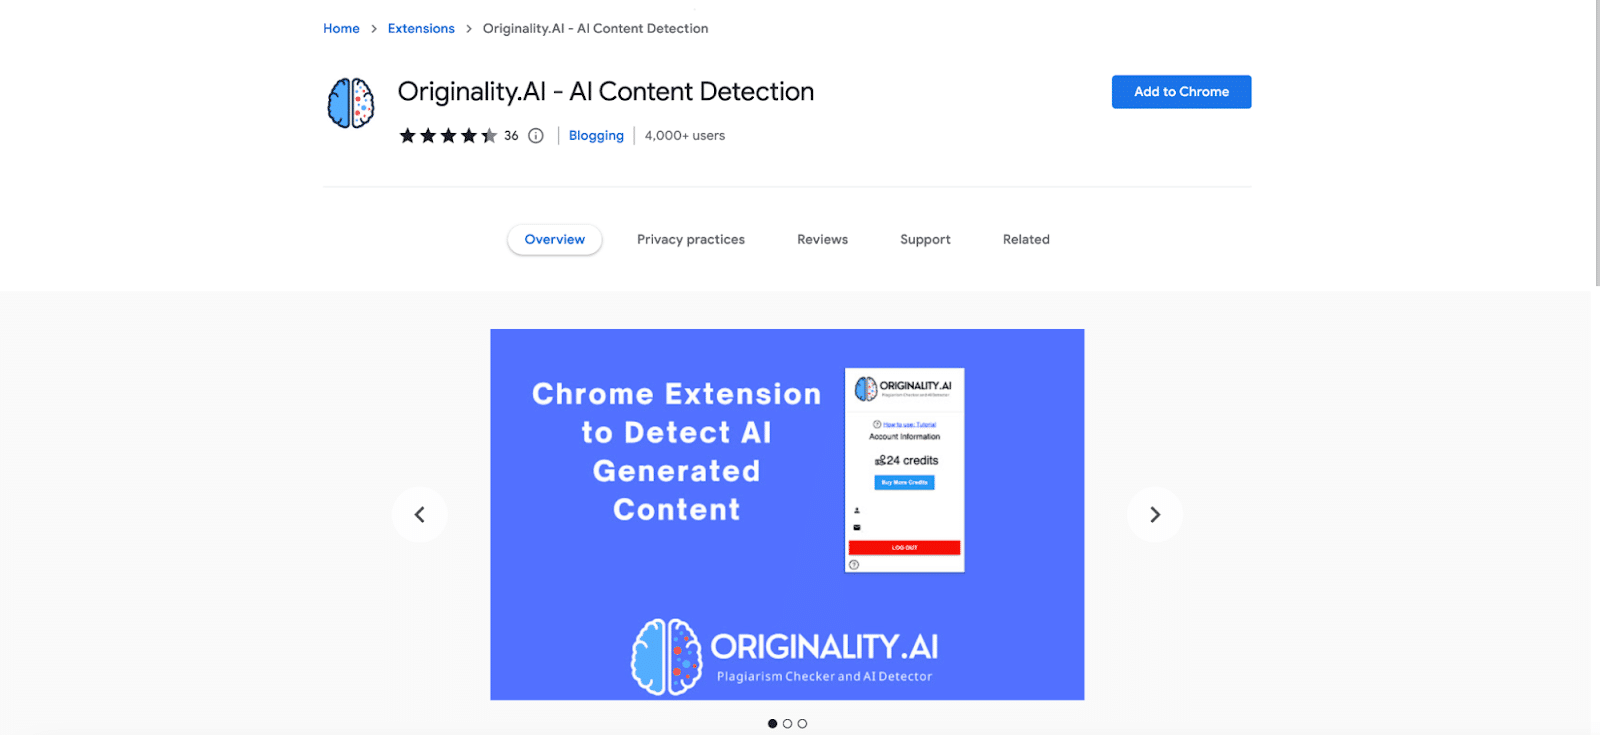 L'estensione di Chrome Originality.AI